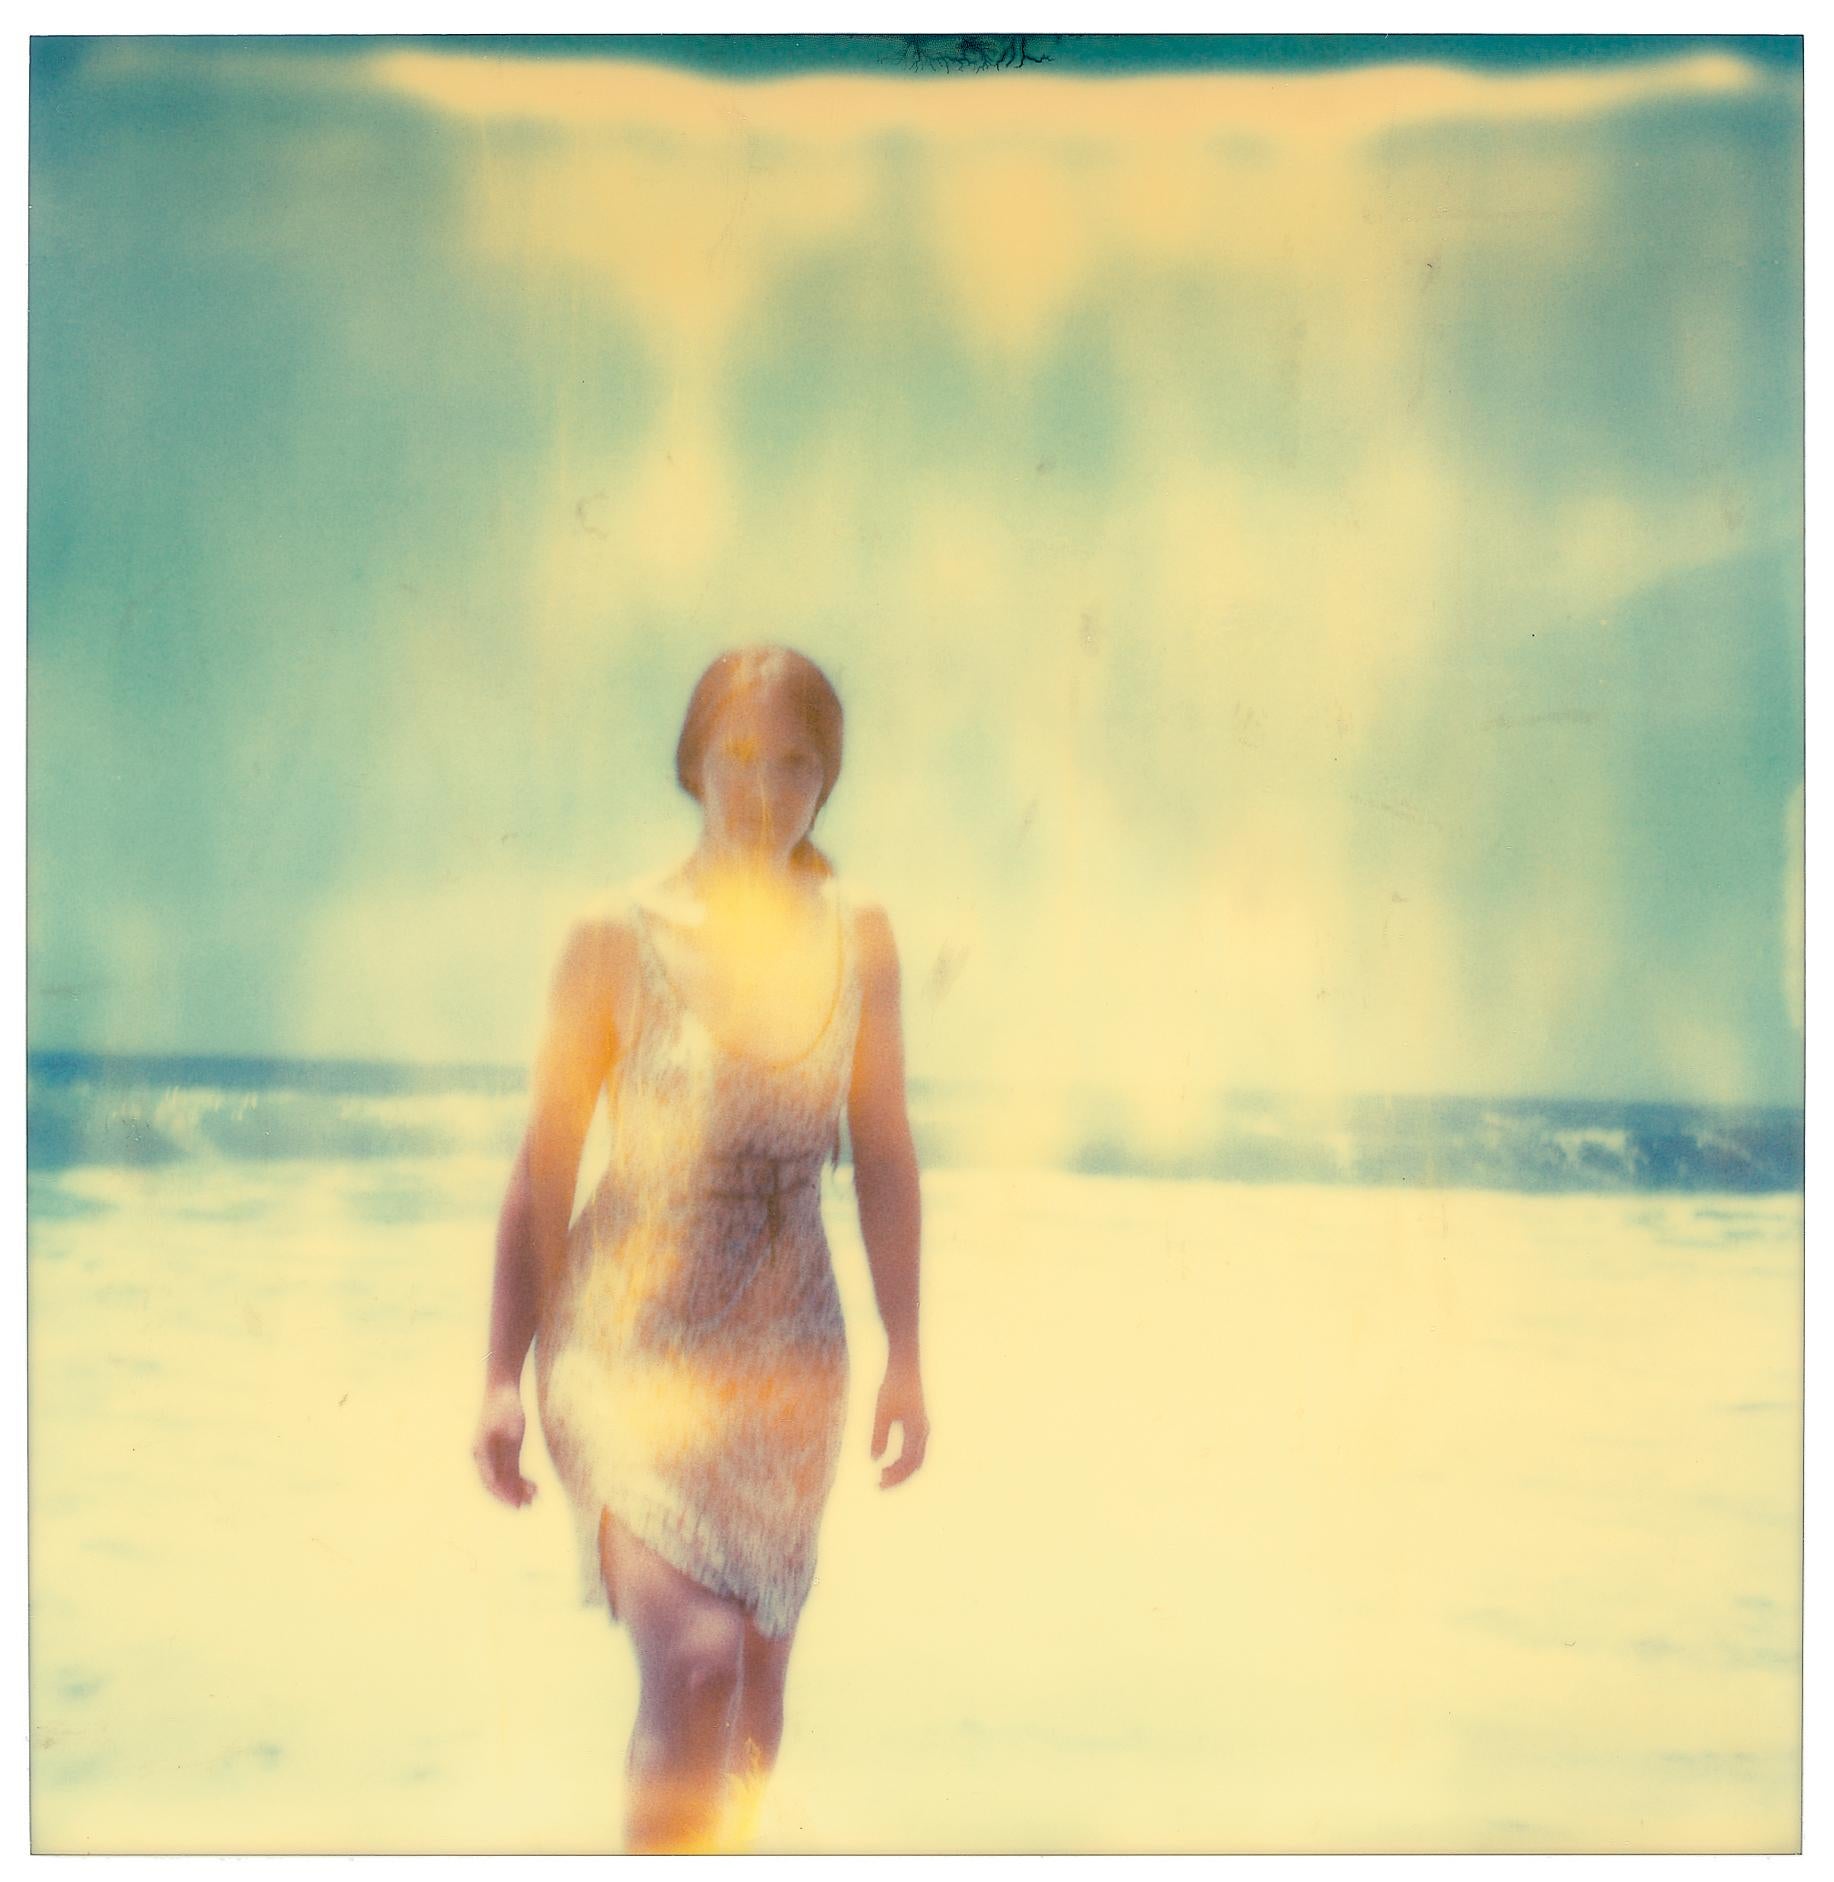 Frau in Malibu (Stranger than Paradise), Triptychon - 1999, 

5/10, 
Jeweils 58x56cm, installiert mit Lücken 58x180cm. 
Analoge C-Prints, von der Künstlerin handgedruckt, basierend auf den 3 Original-Polaroids. 
Label für Zertifikat und